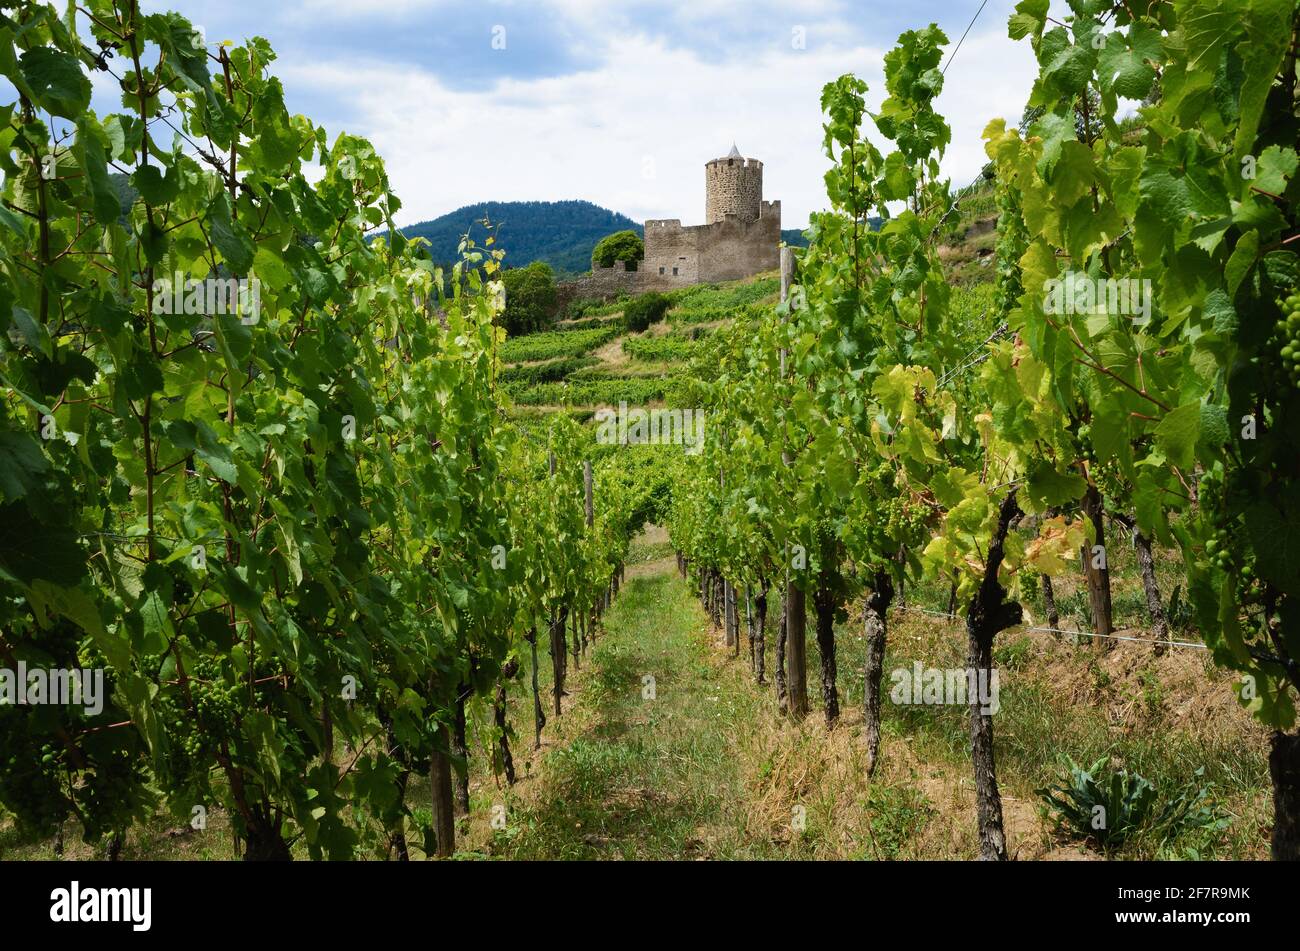 Vista estiva delle rovine del castello medievale tra i vigneti del vigneto di Keysersberg, famoso villaggio vinicolo in Alsazia, vicino a Colmar (Francia) Foto Stock